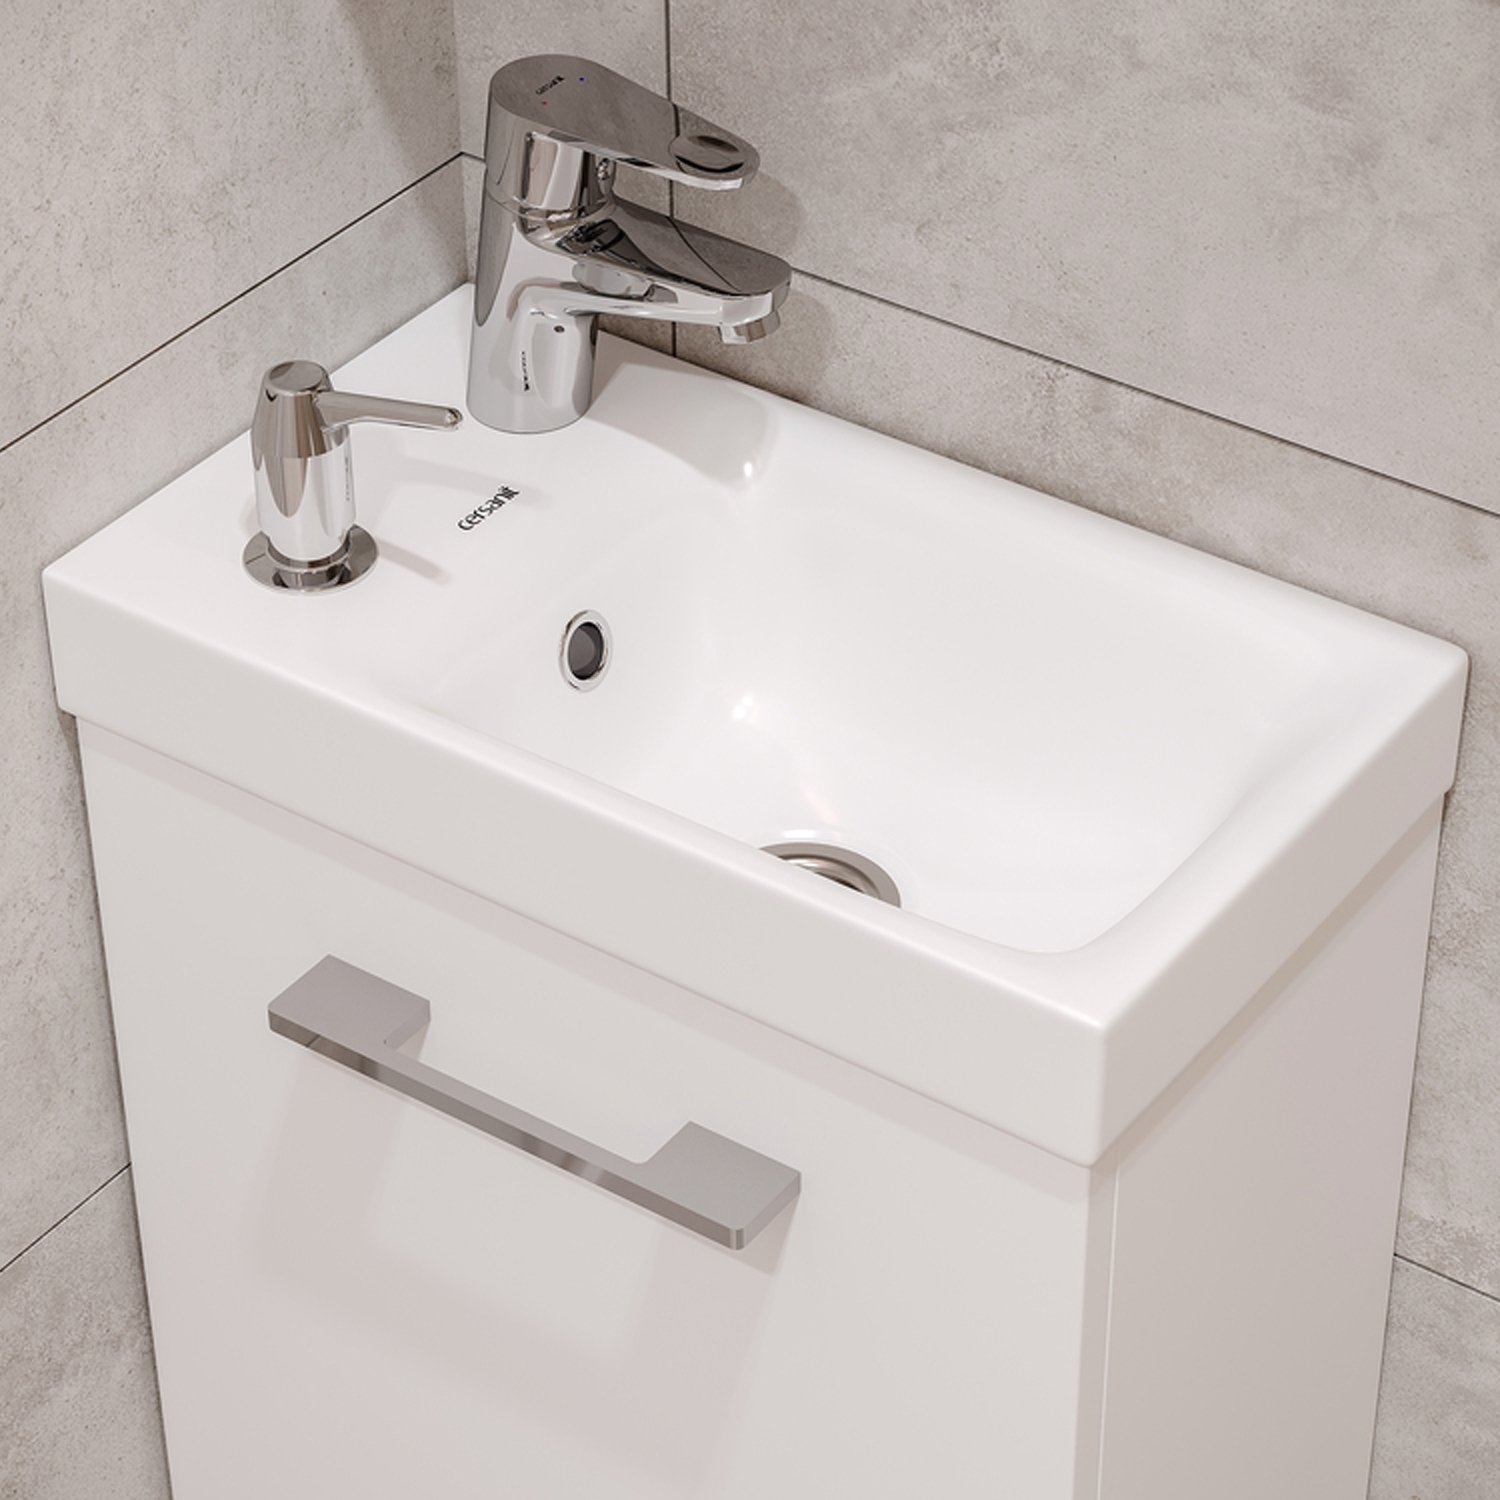 Мебель для ванной Cersanit Lara 40, с раковиной, смесителем и дозатором для мыла, цвет белый